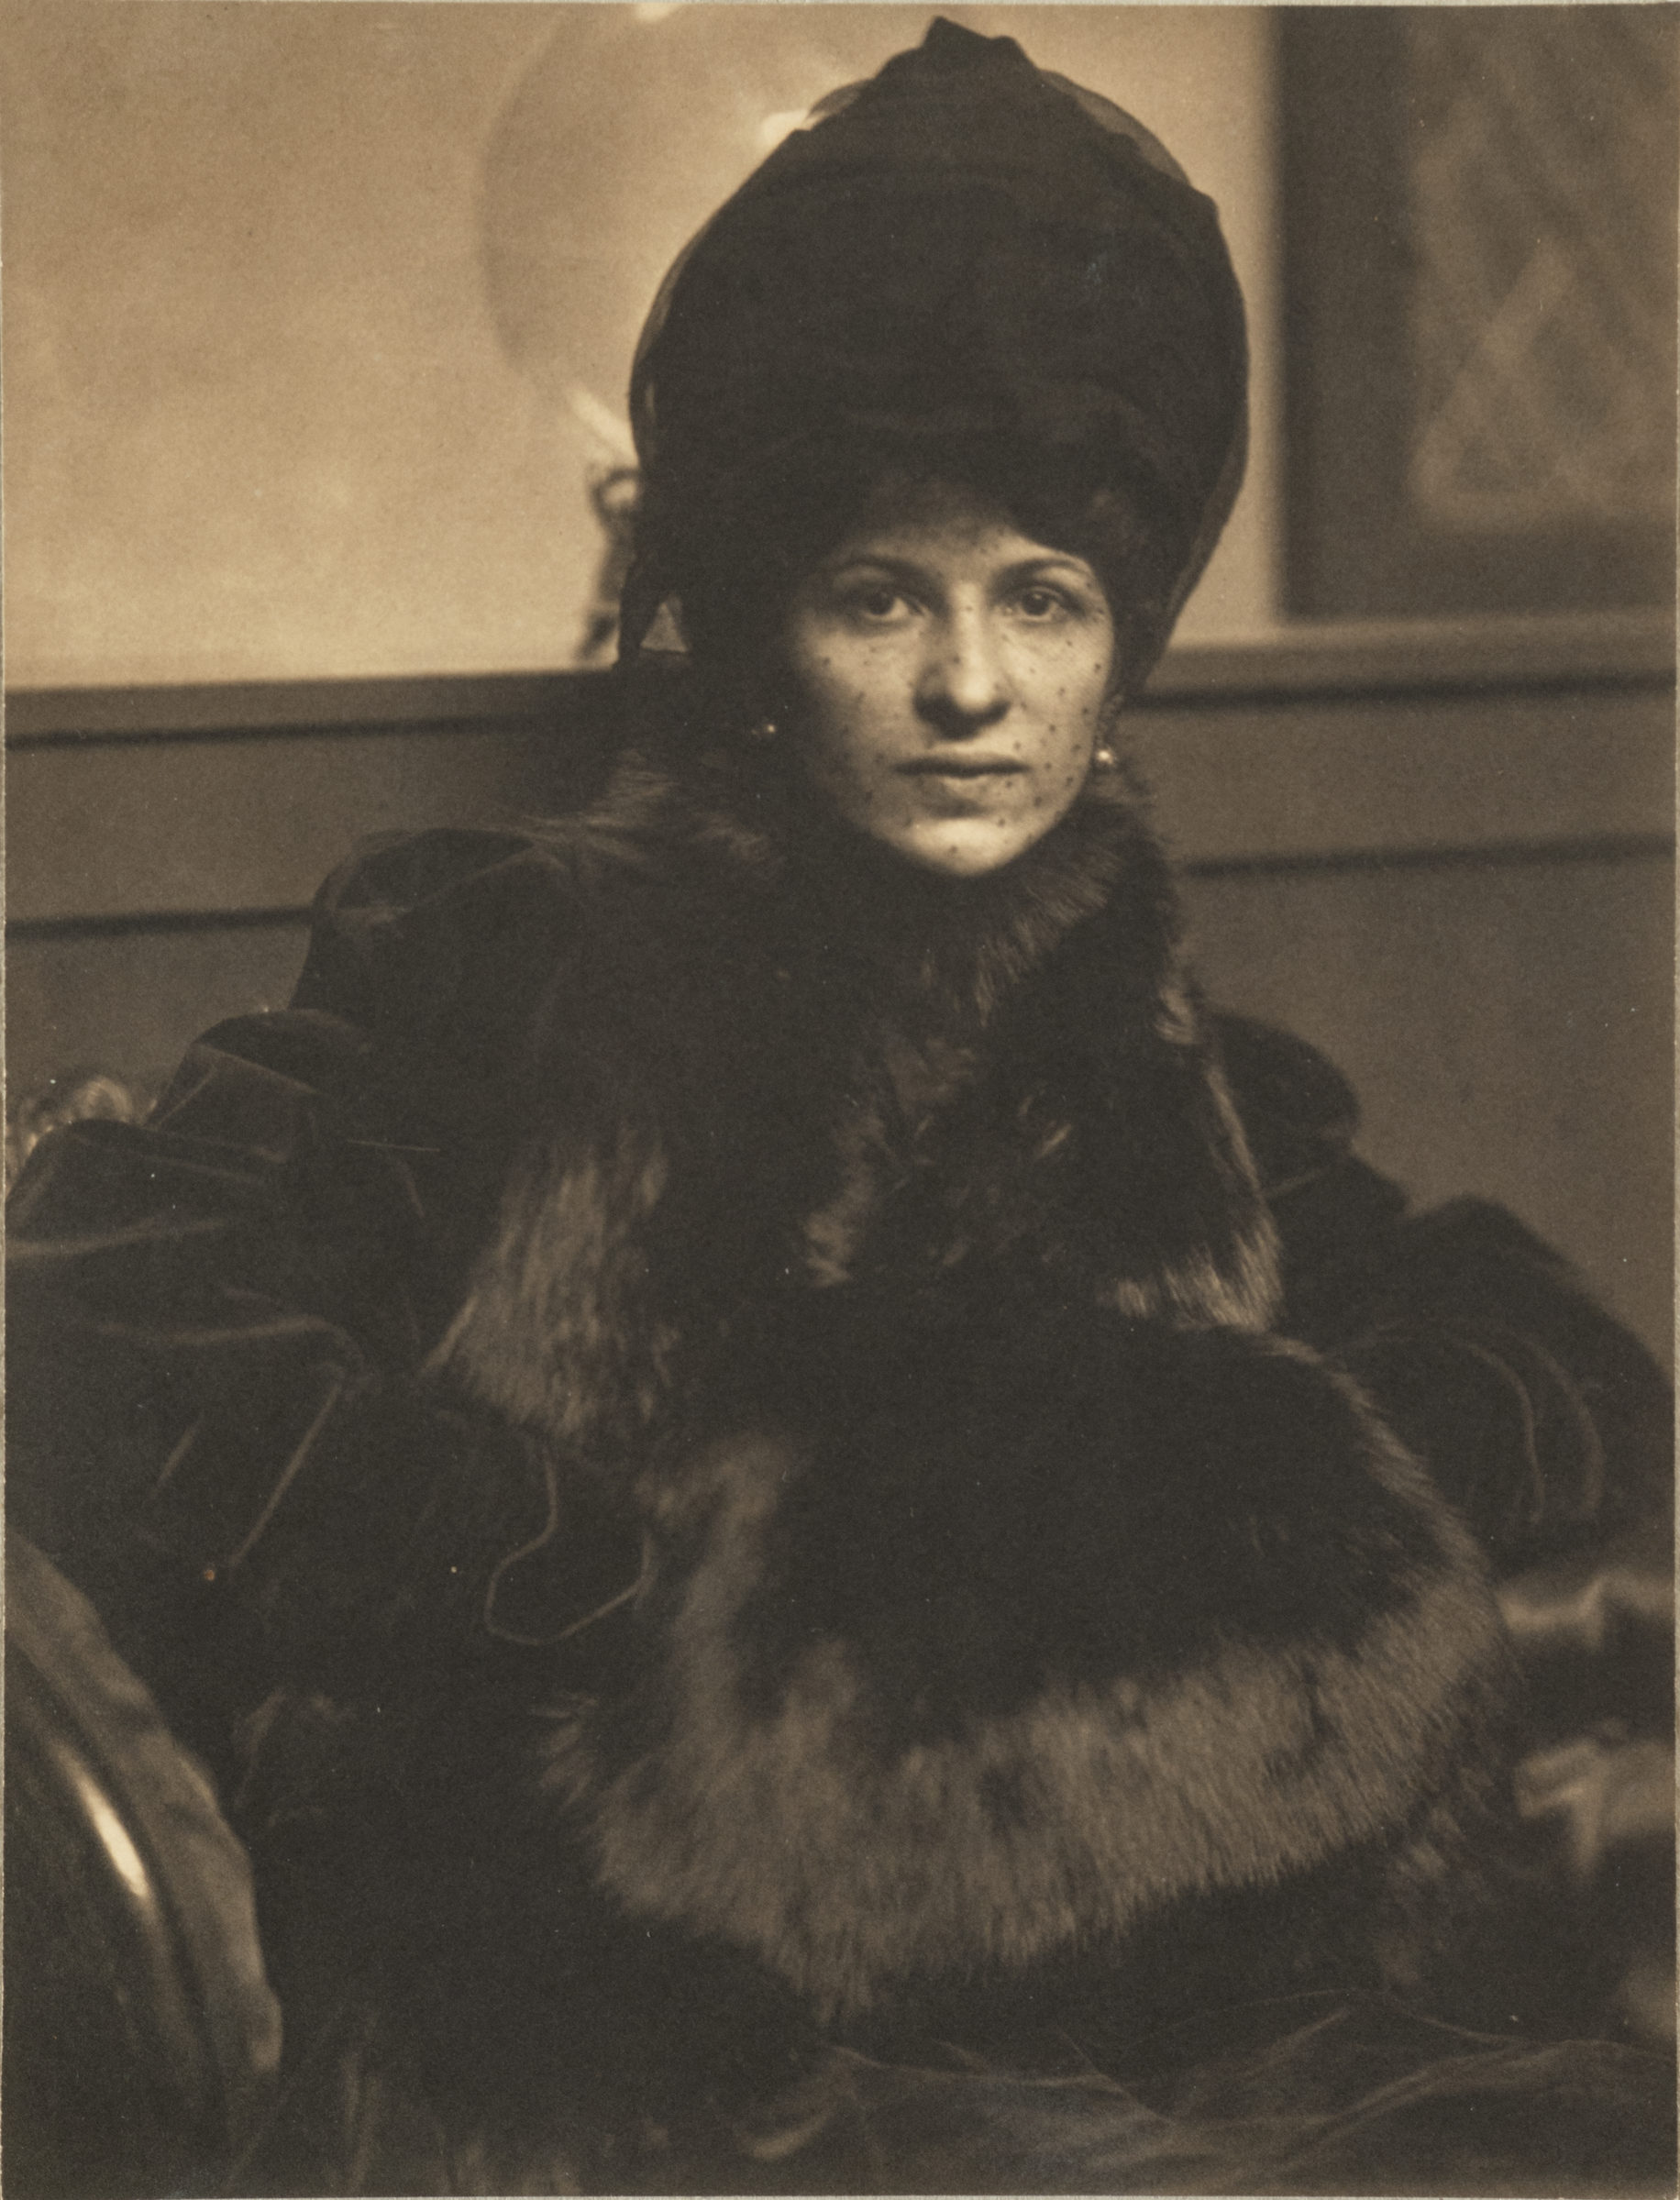 Eulabee Dix portréja by Gertrude Käsebier - ca. 1910 - 17.18 x 15.28 cm 